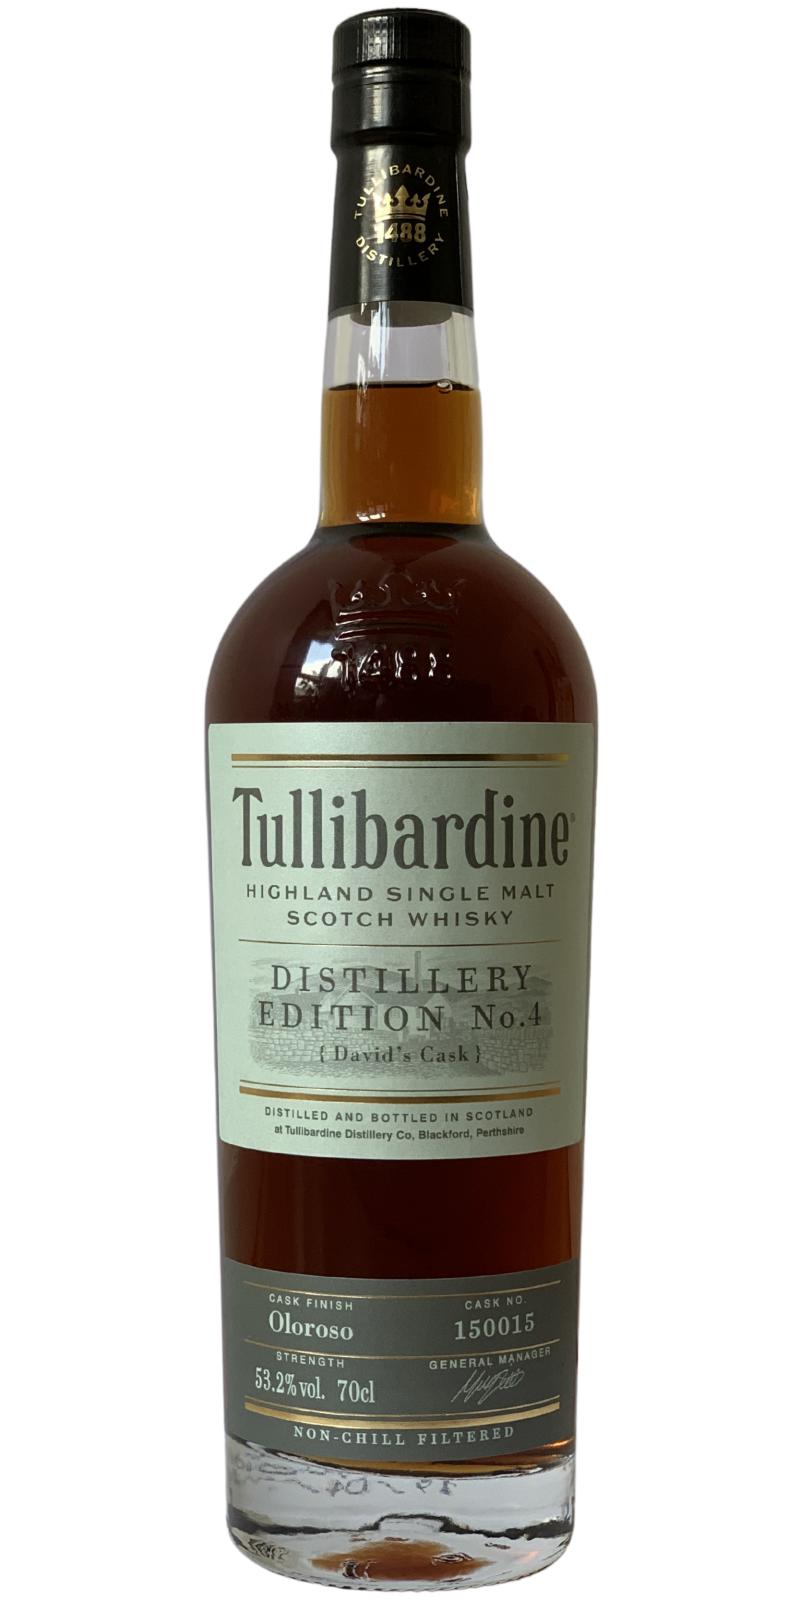 Tullibardine Distillery Edition No.4 Oloroso Finish 53.2% 700ml